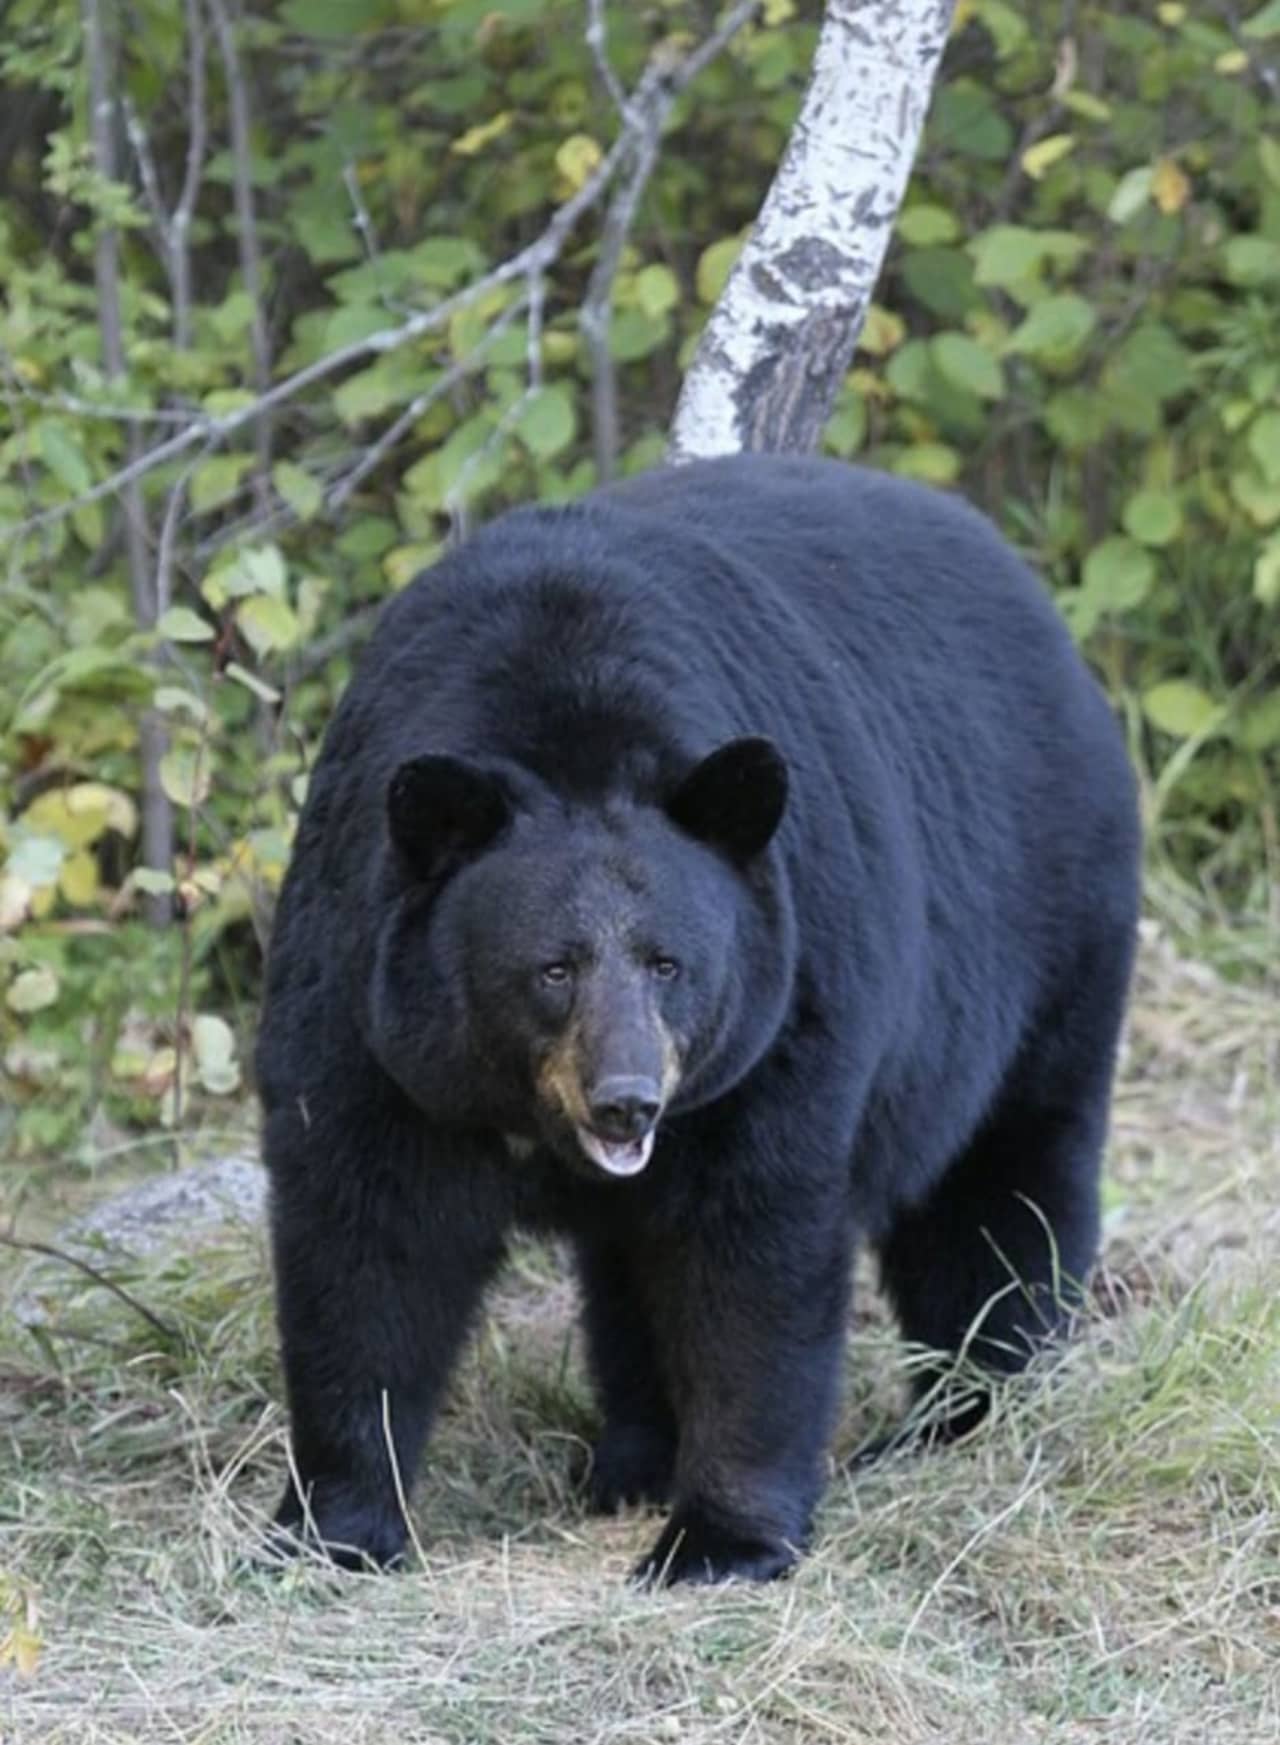 An American black bear.